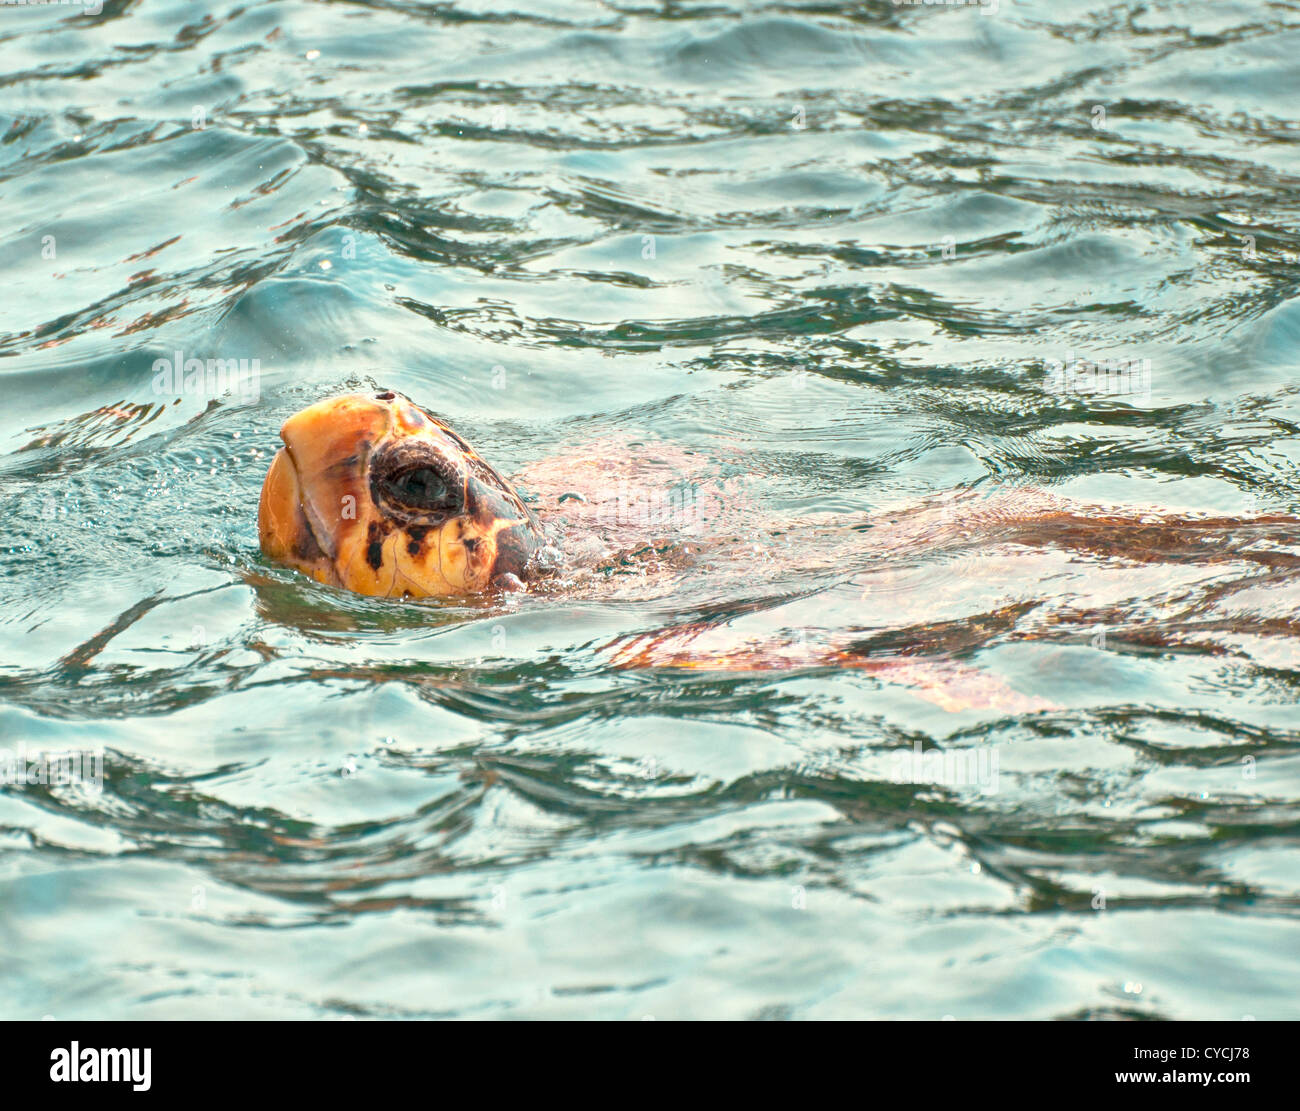 La tortuga caguama (Caretta caretta) natación. Especies en peligro de extinción Foto de stock